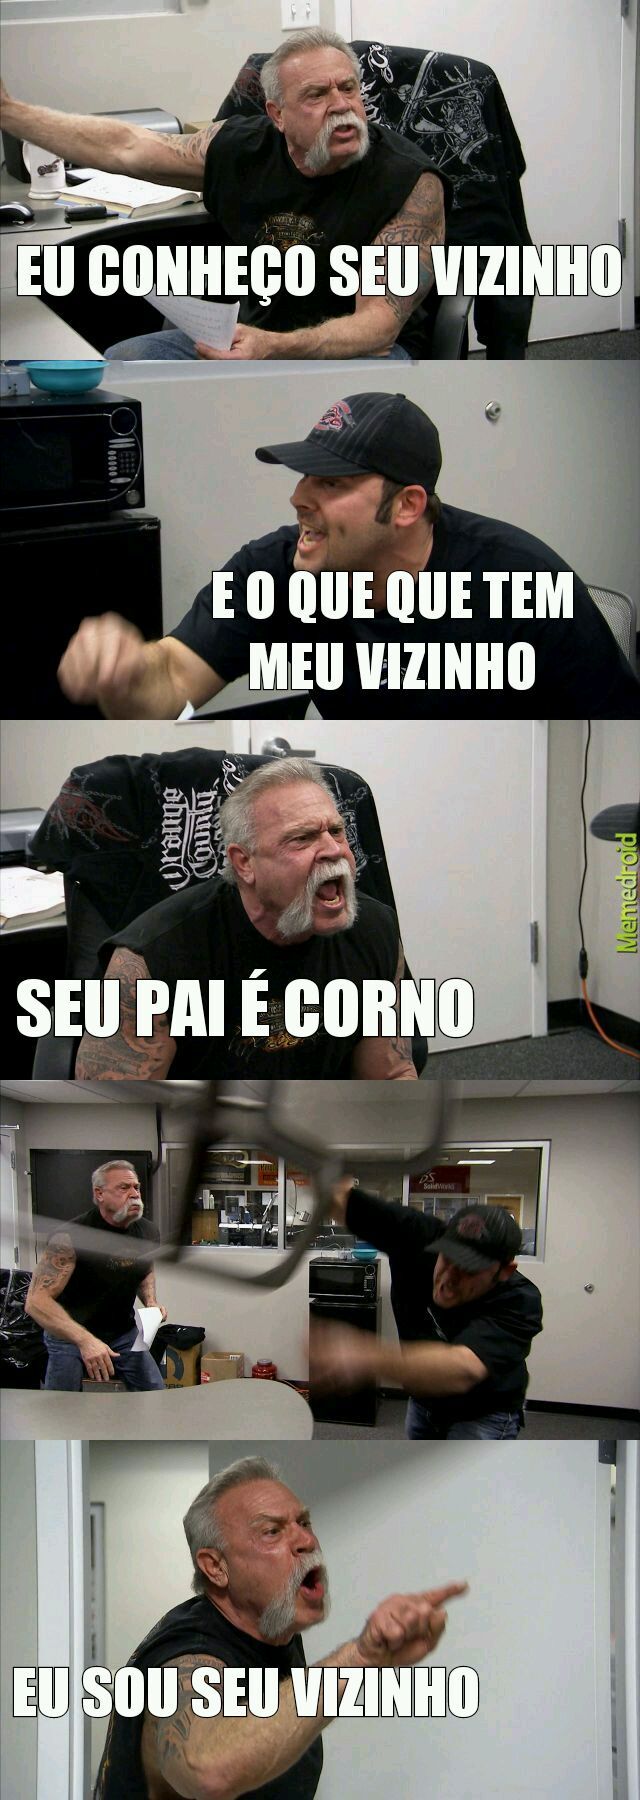 Hum...Corninho - meme